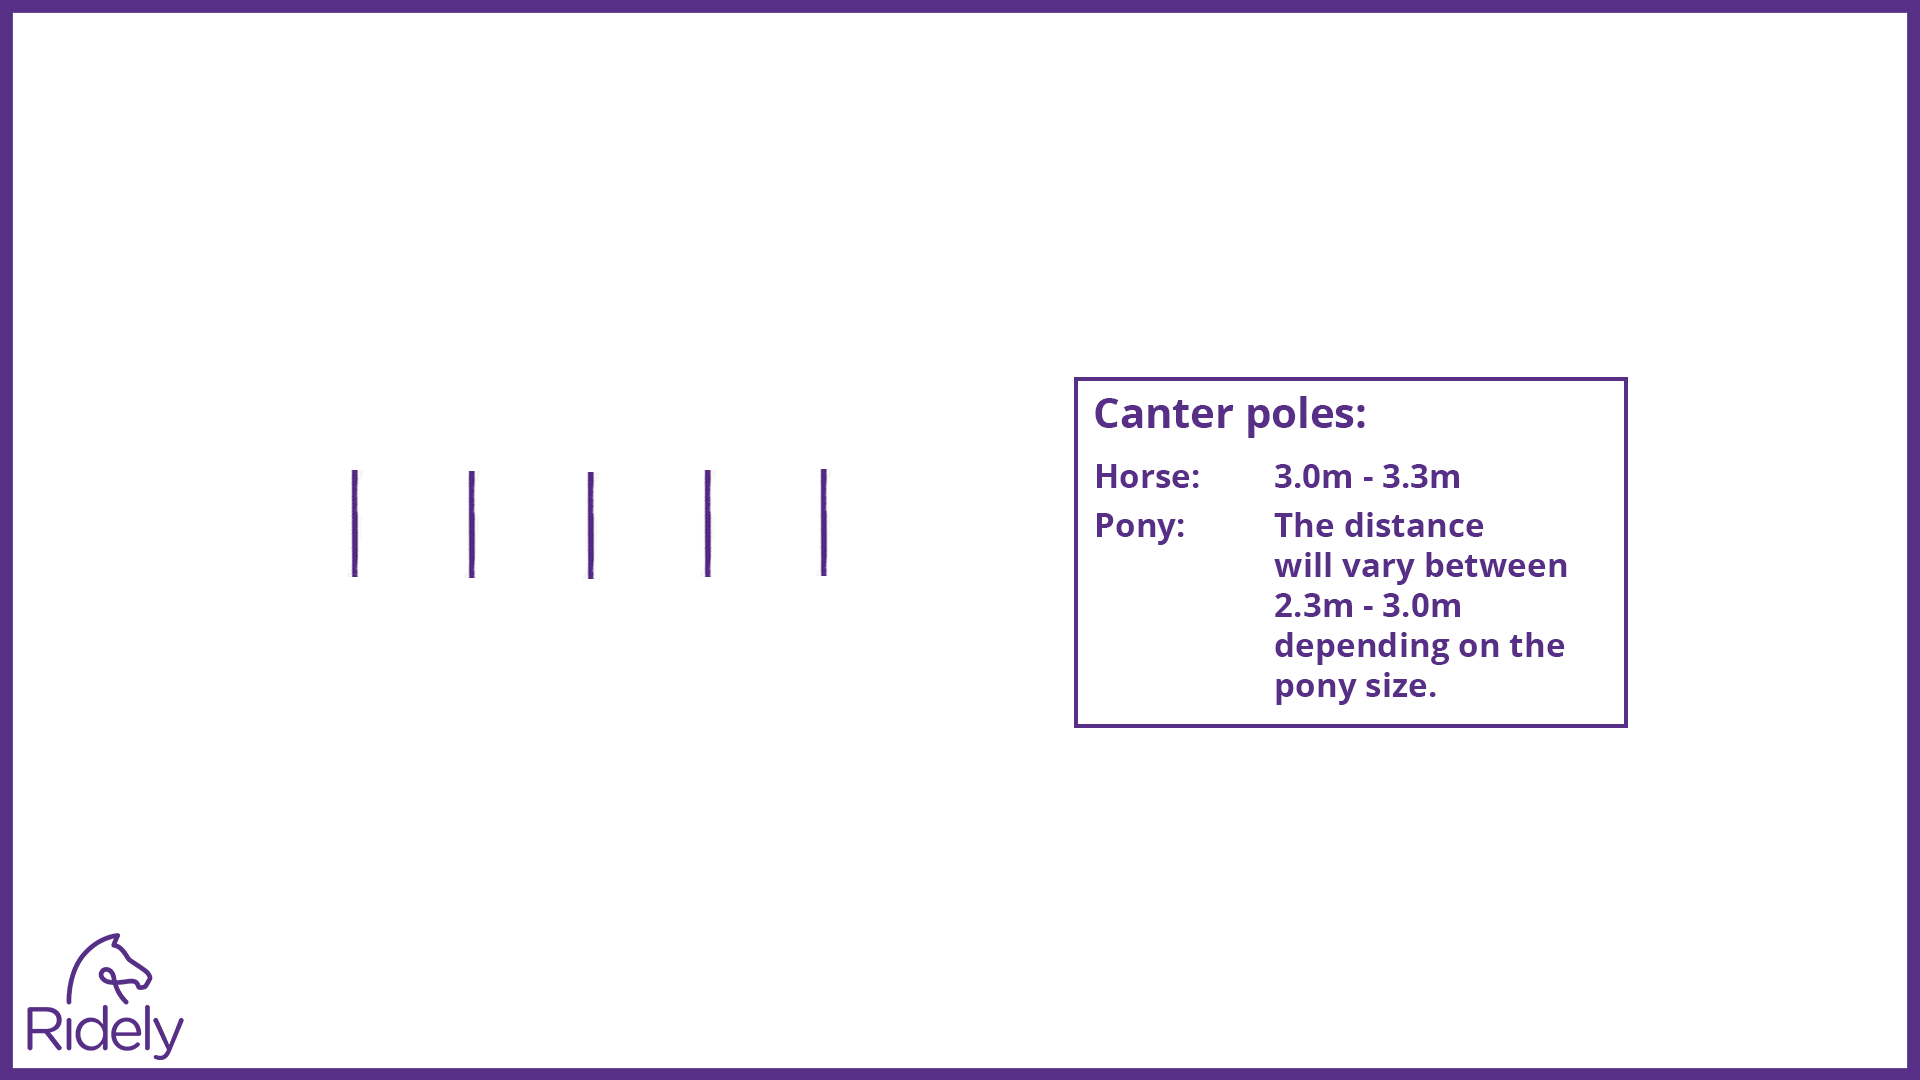 Canter poles